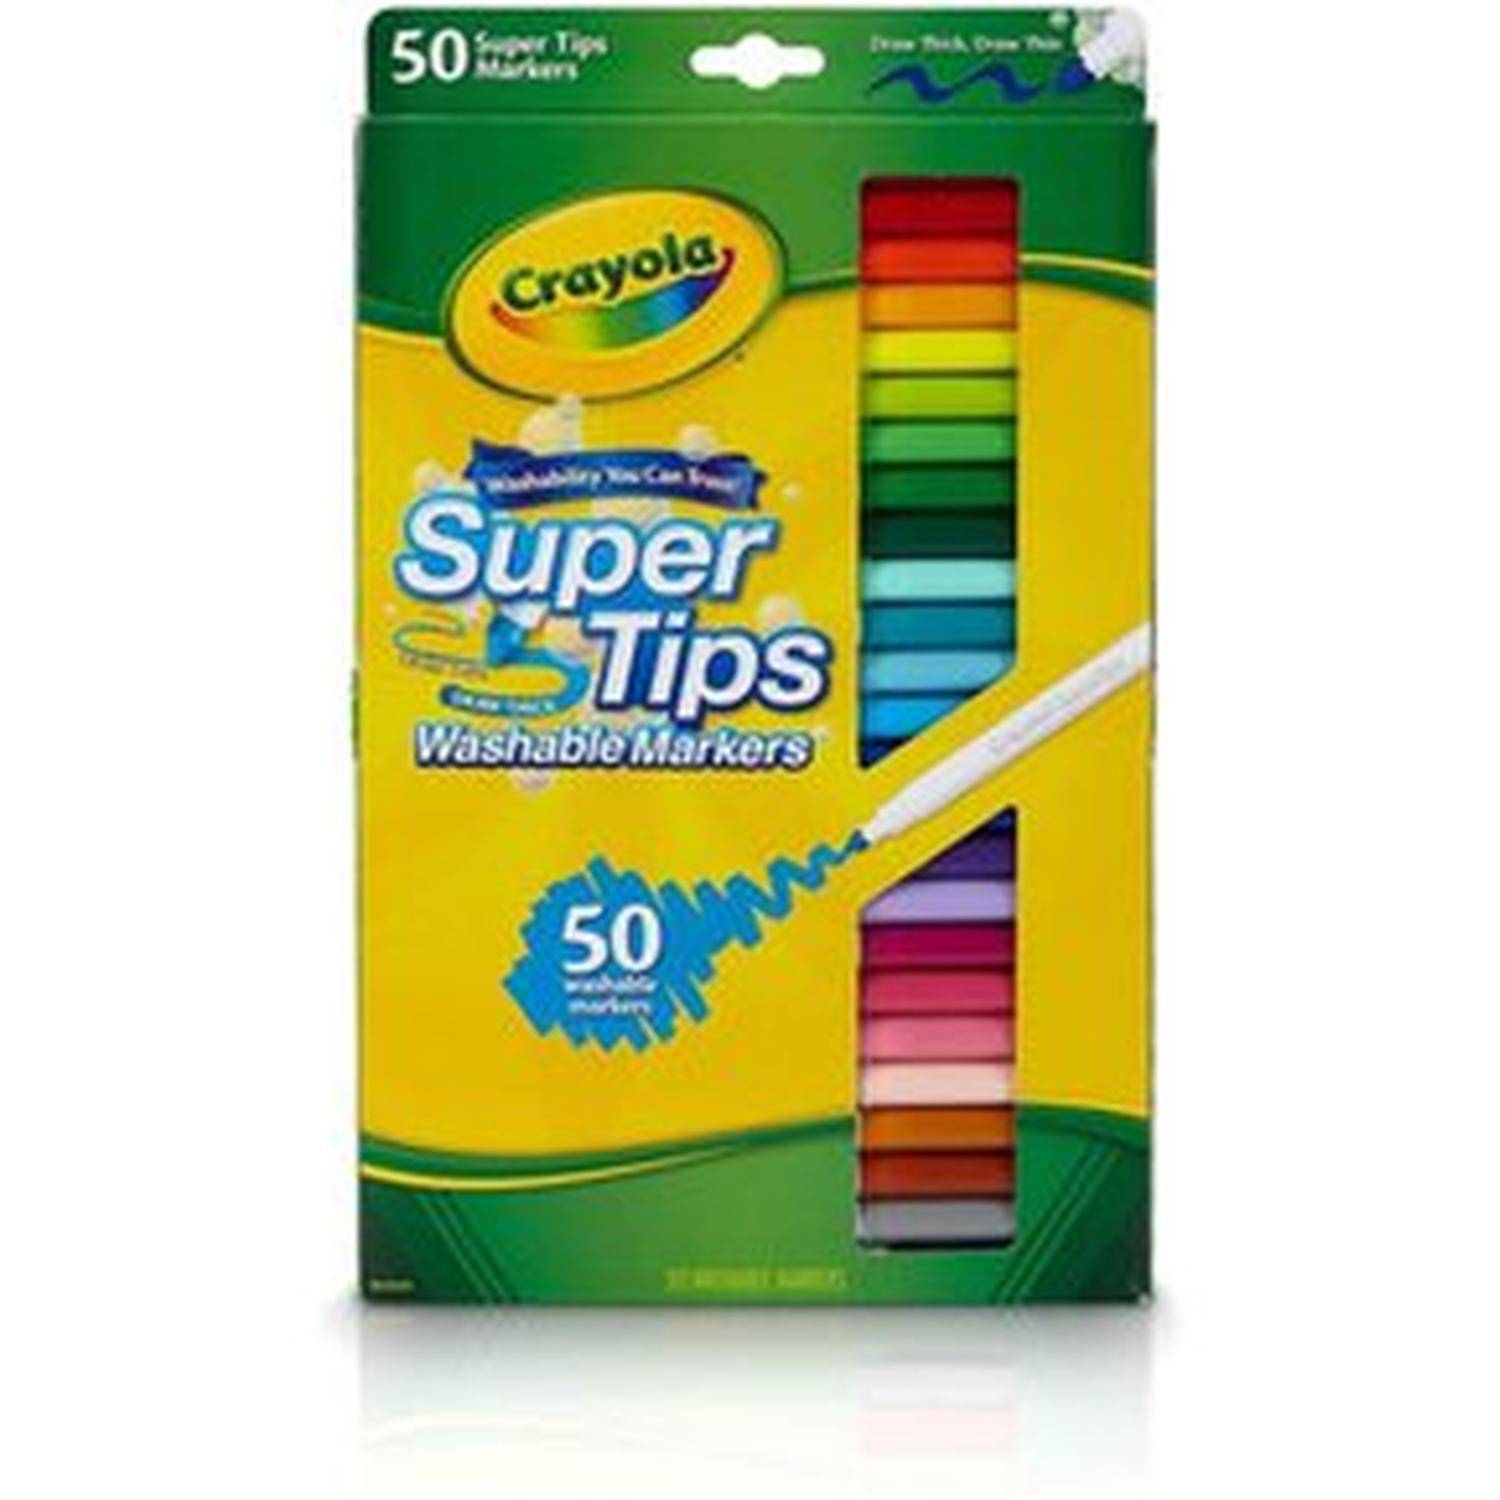 Plumones Lettering Crayola Super Tips x 50 unds GENERICO 